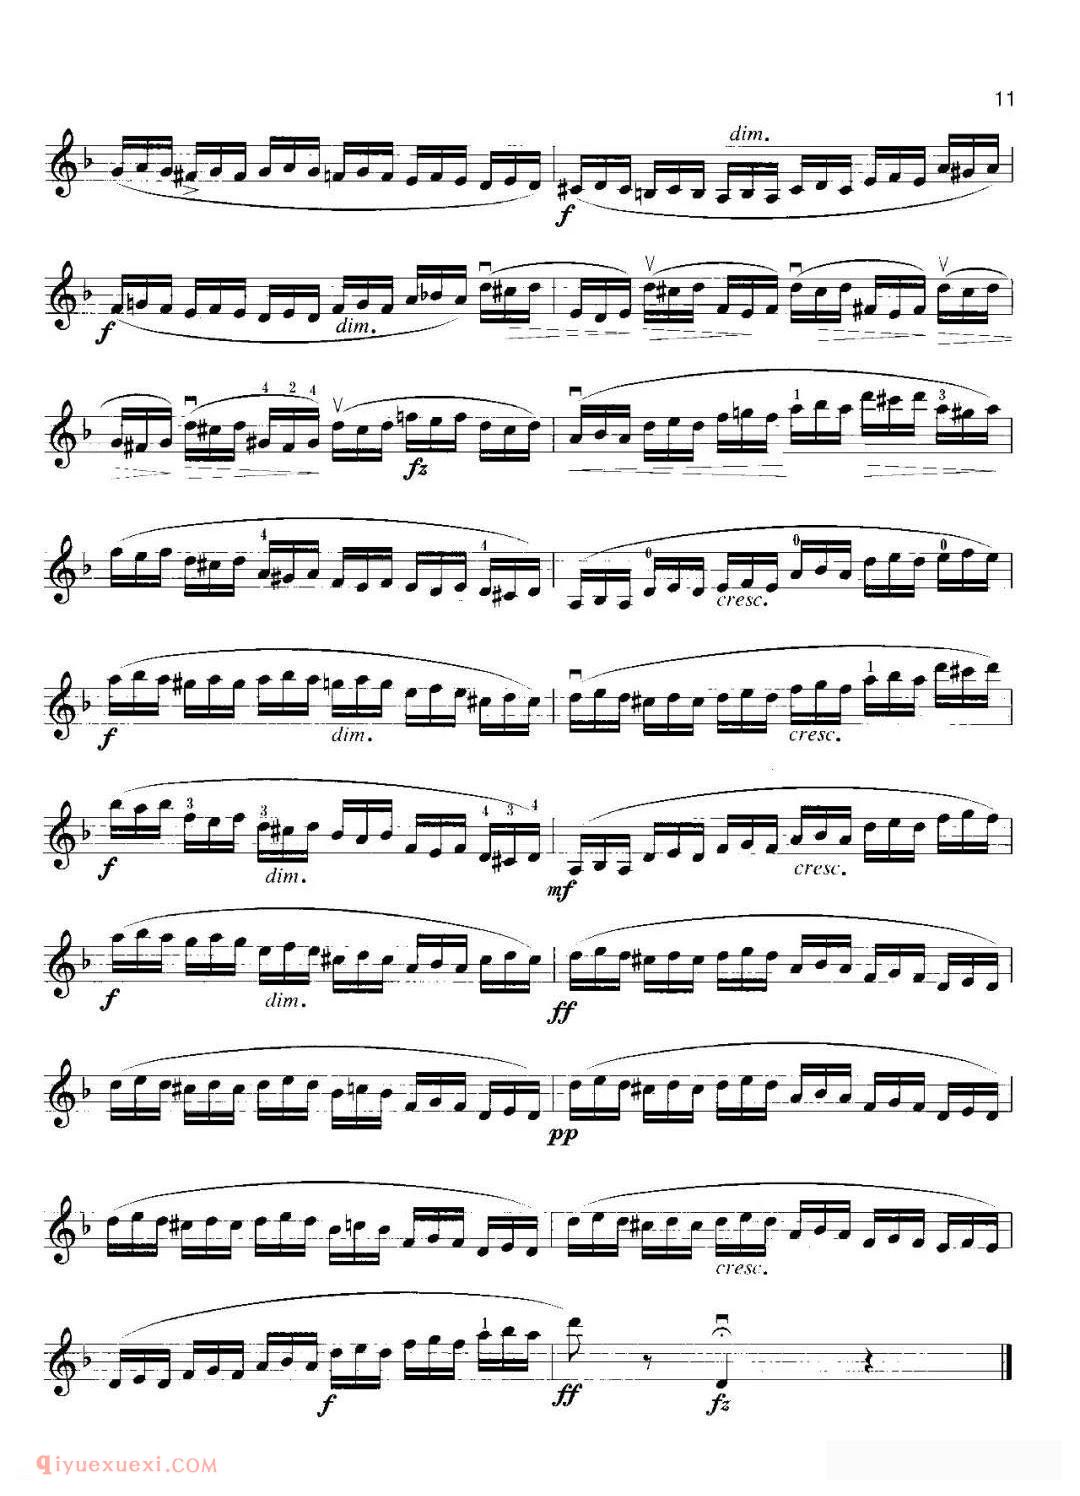 小提琴考级曲谱《五级：练习曲/开塞 No.30》